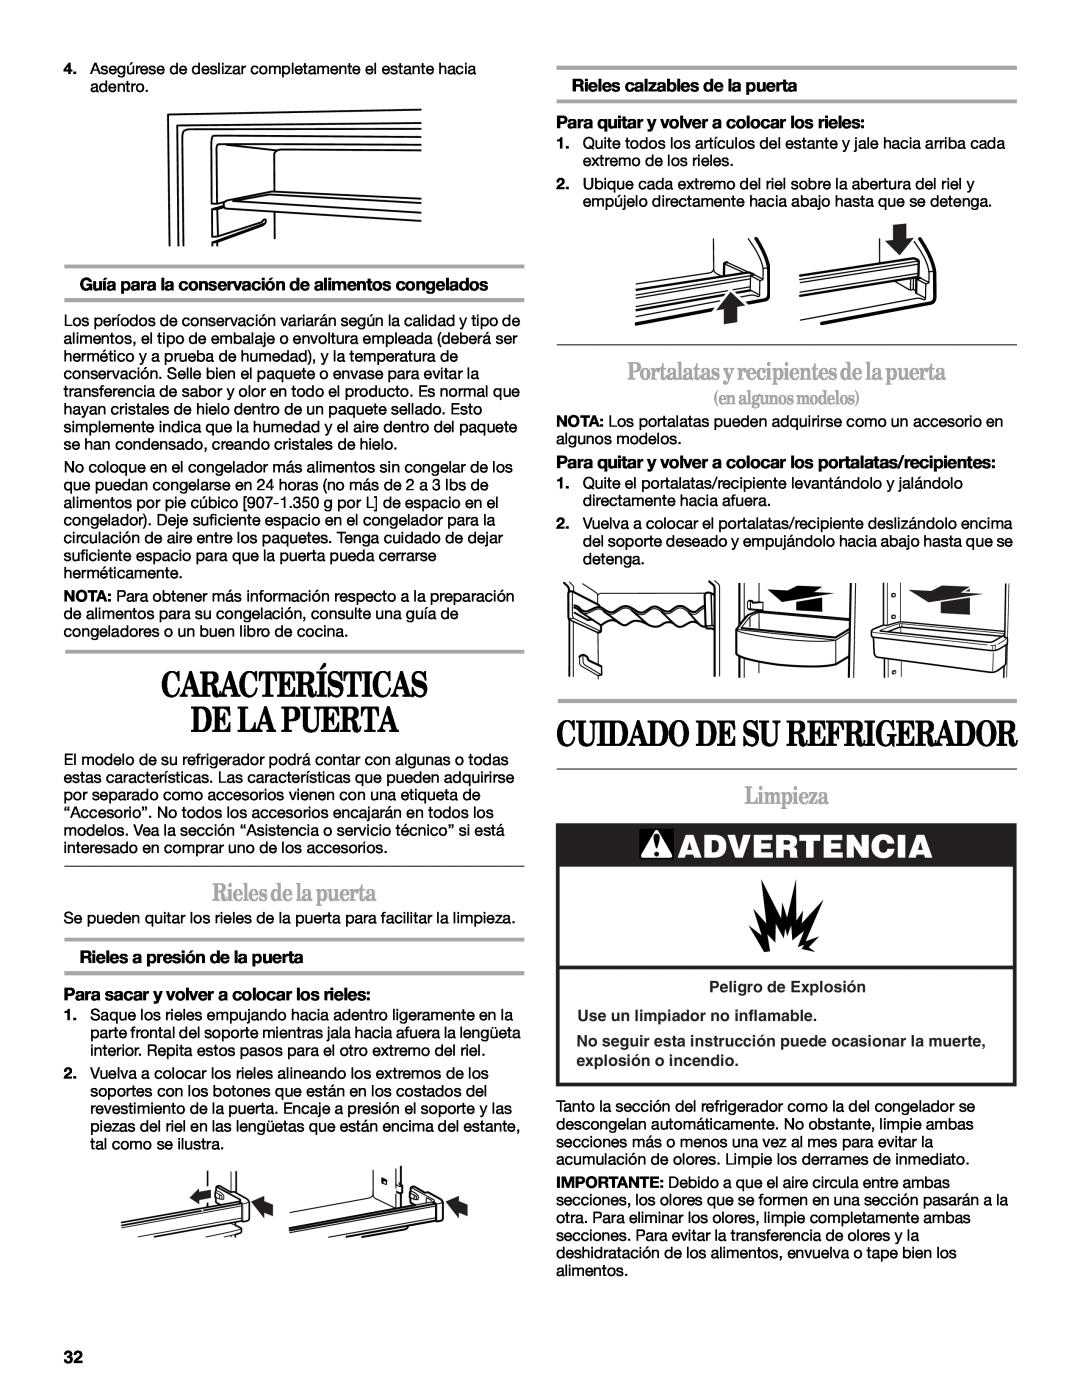 Whirlpool W6RXNGFWQ Características De La Puerta, Cuidado De Su Refrigerador, Rielesdelapuerta, Limpieza, Advertencia 